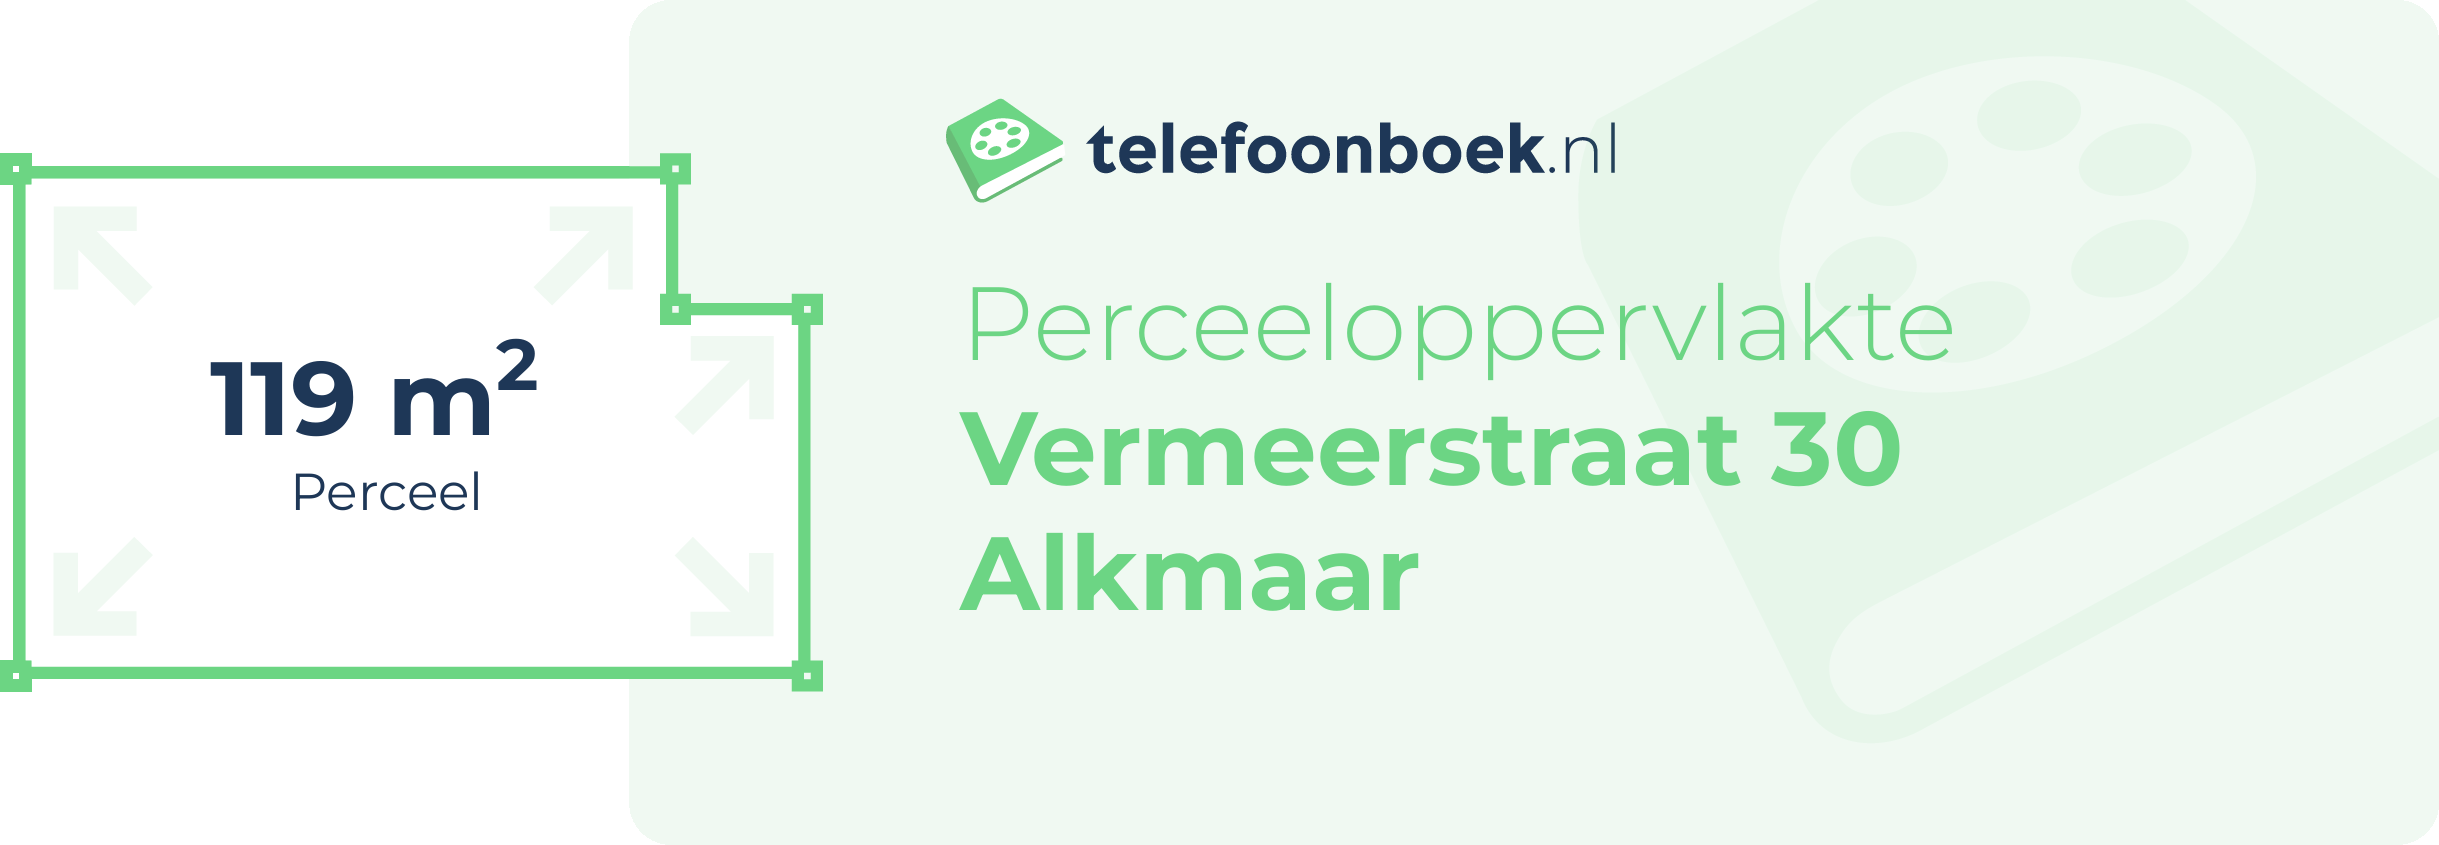 Perceeloppervlakte Vermeerstraat 30 Alkmaar